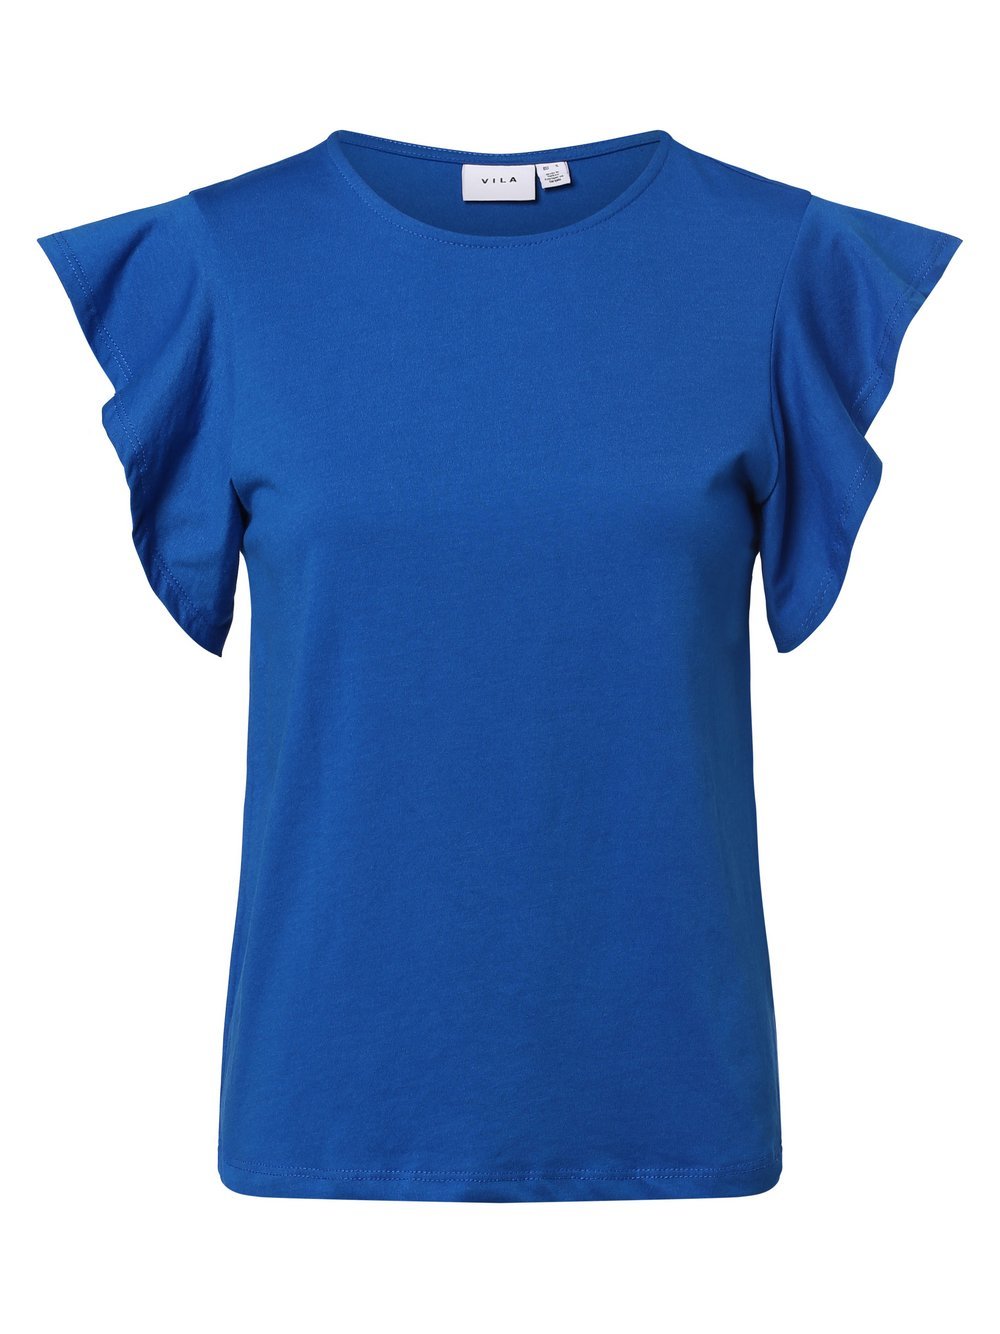 Vila - T-shirt damski  VISummer, niebieski